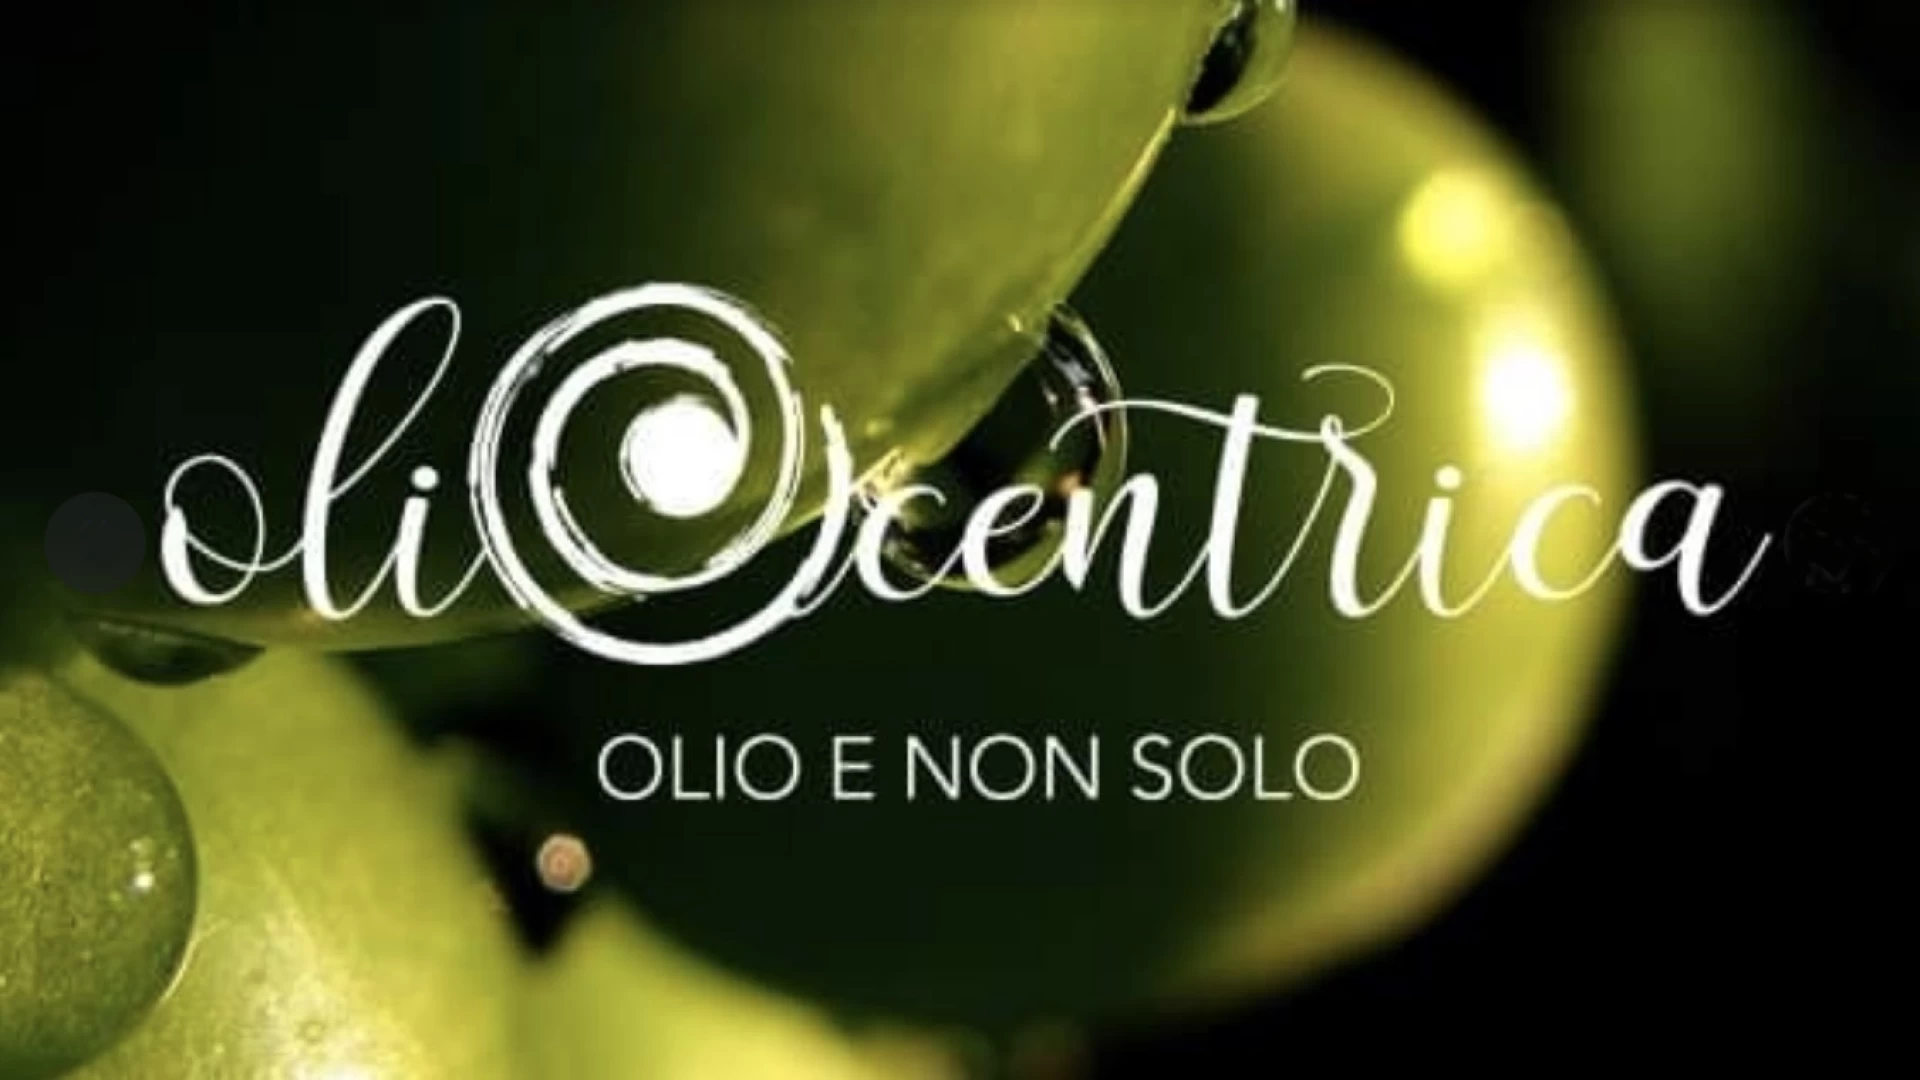 Oliocentrica, Latina,  Negozio di alimenti naturali, Oleificio, Enoteca